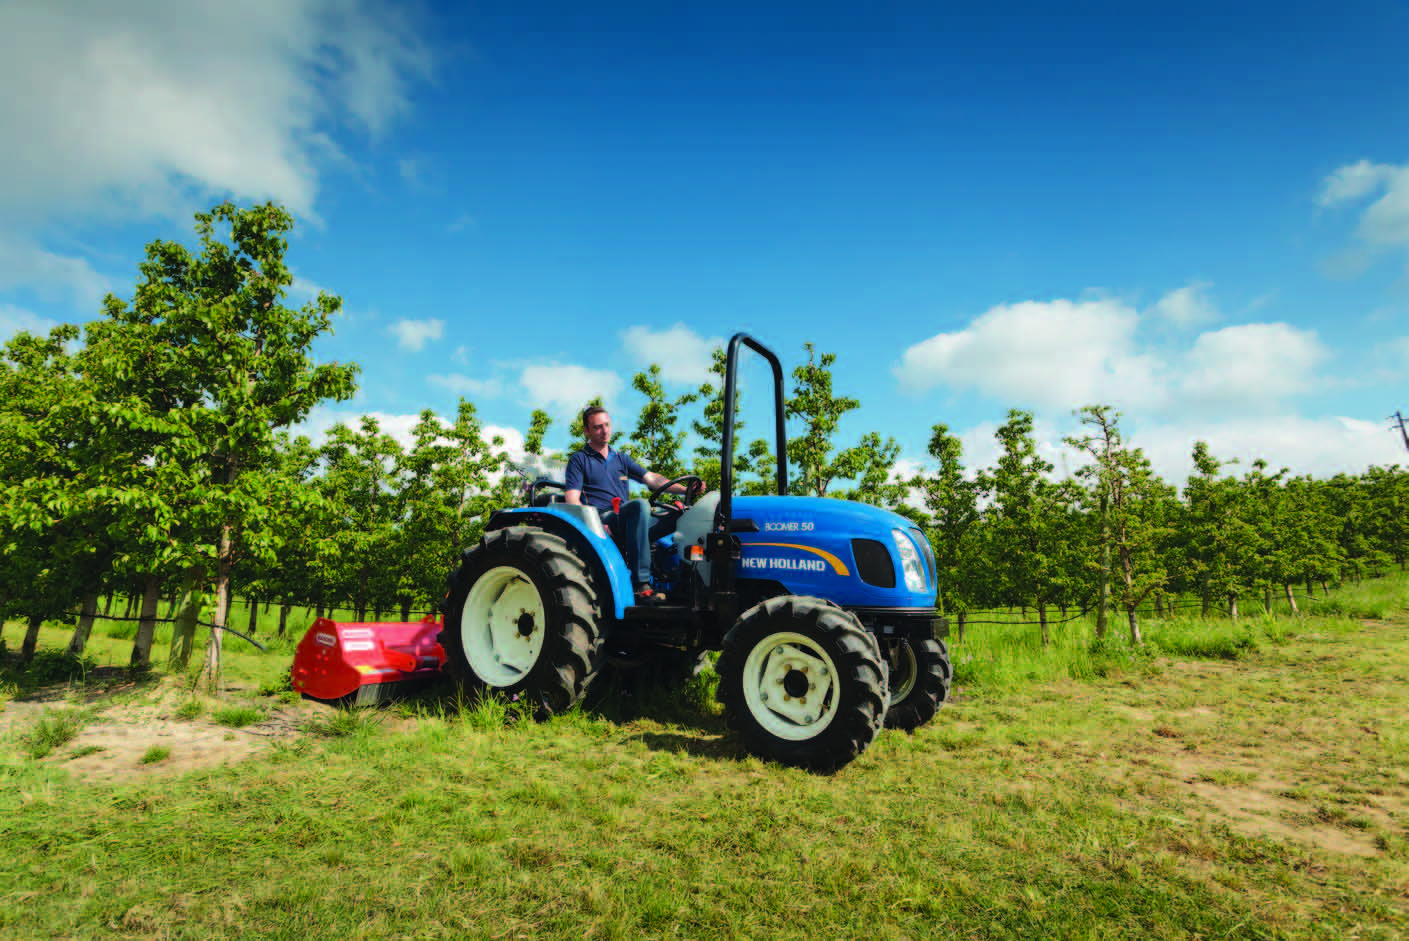 02 En traktorserie. En lang række anvendelsesmuligheder. New Holland er traktorspecialist med modeller udviklet til landbrugsdrift, kommunale opgaver og alt derimellem.